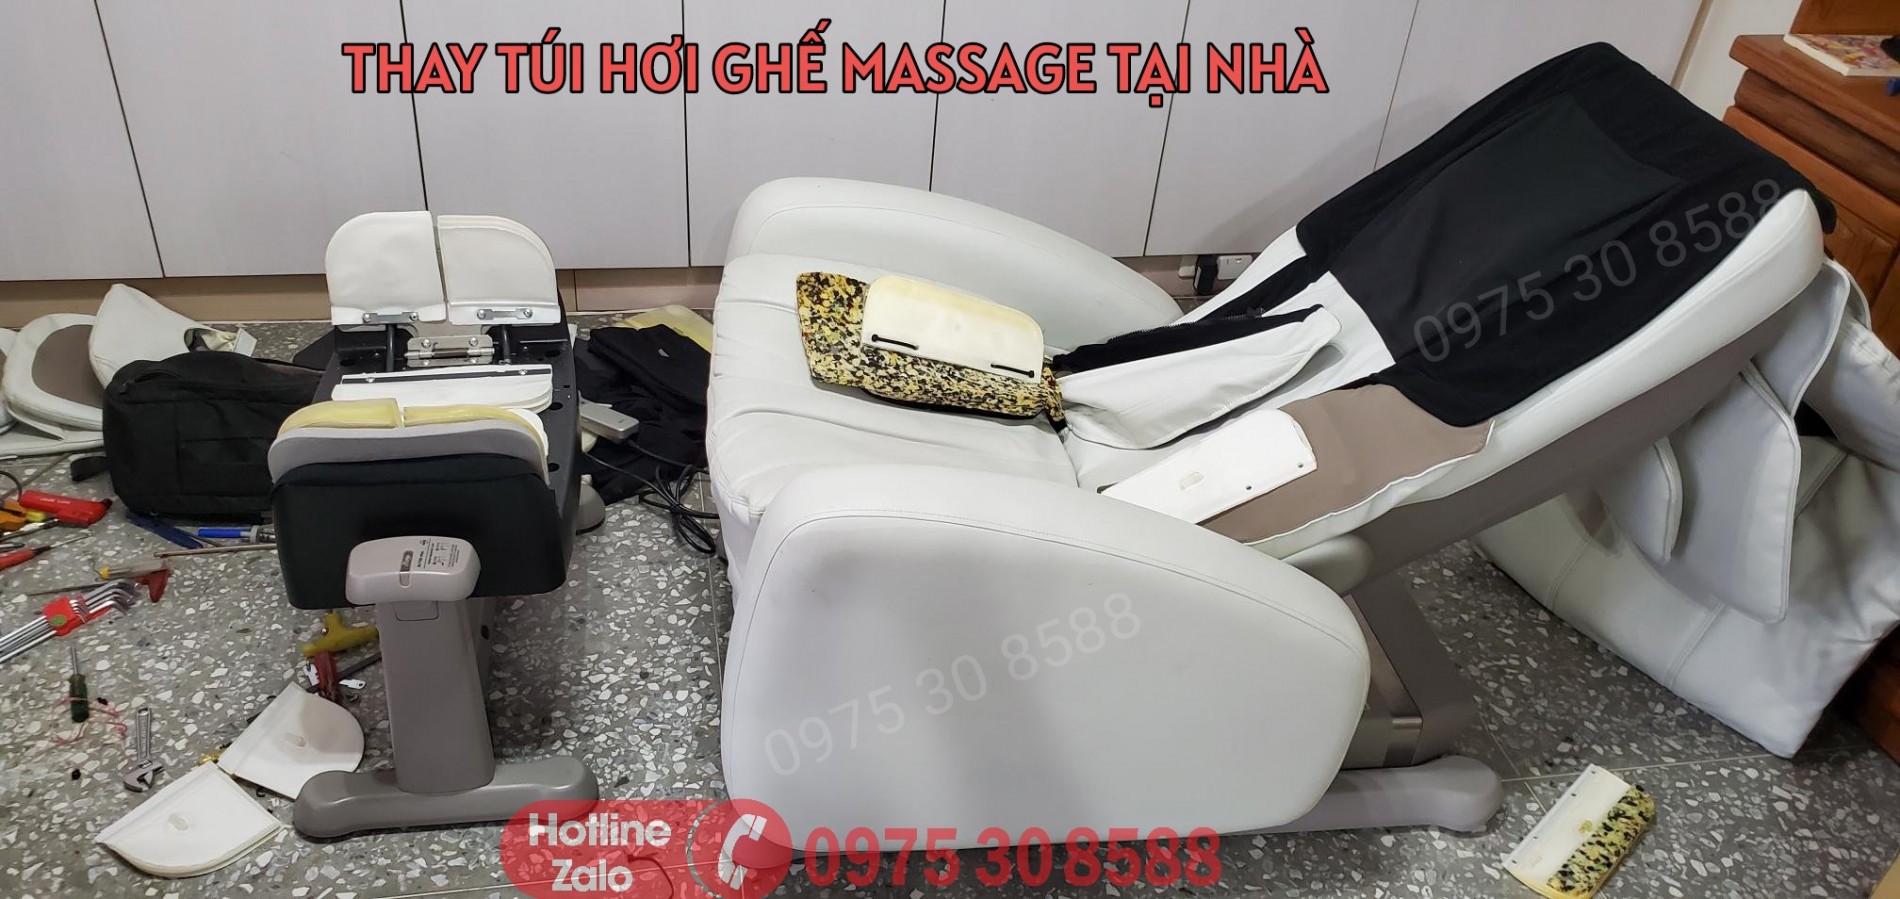 thay_tui_khi_ghe_massage_8